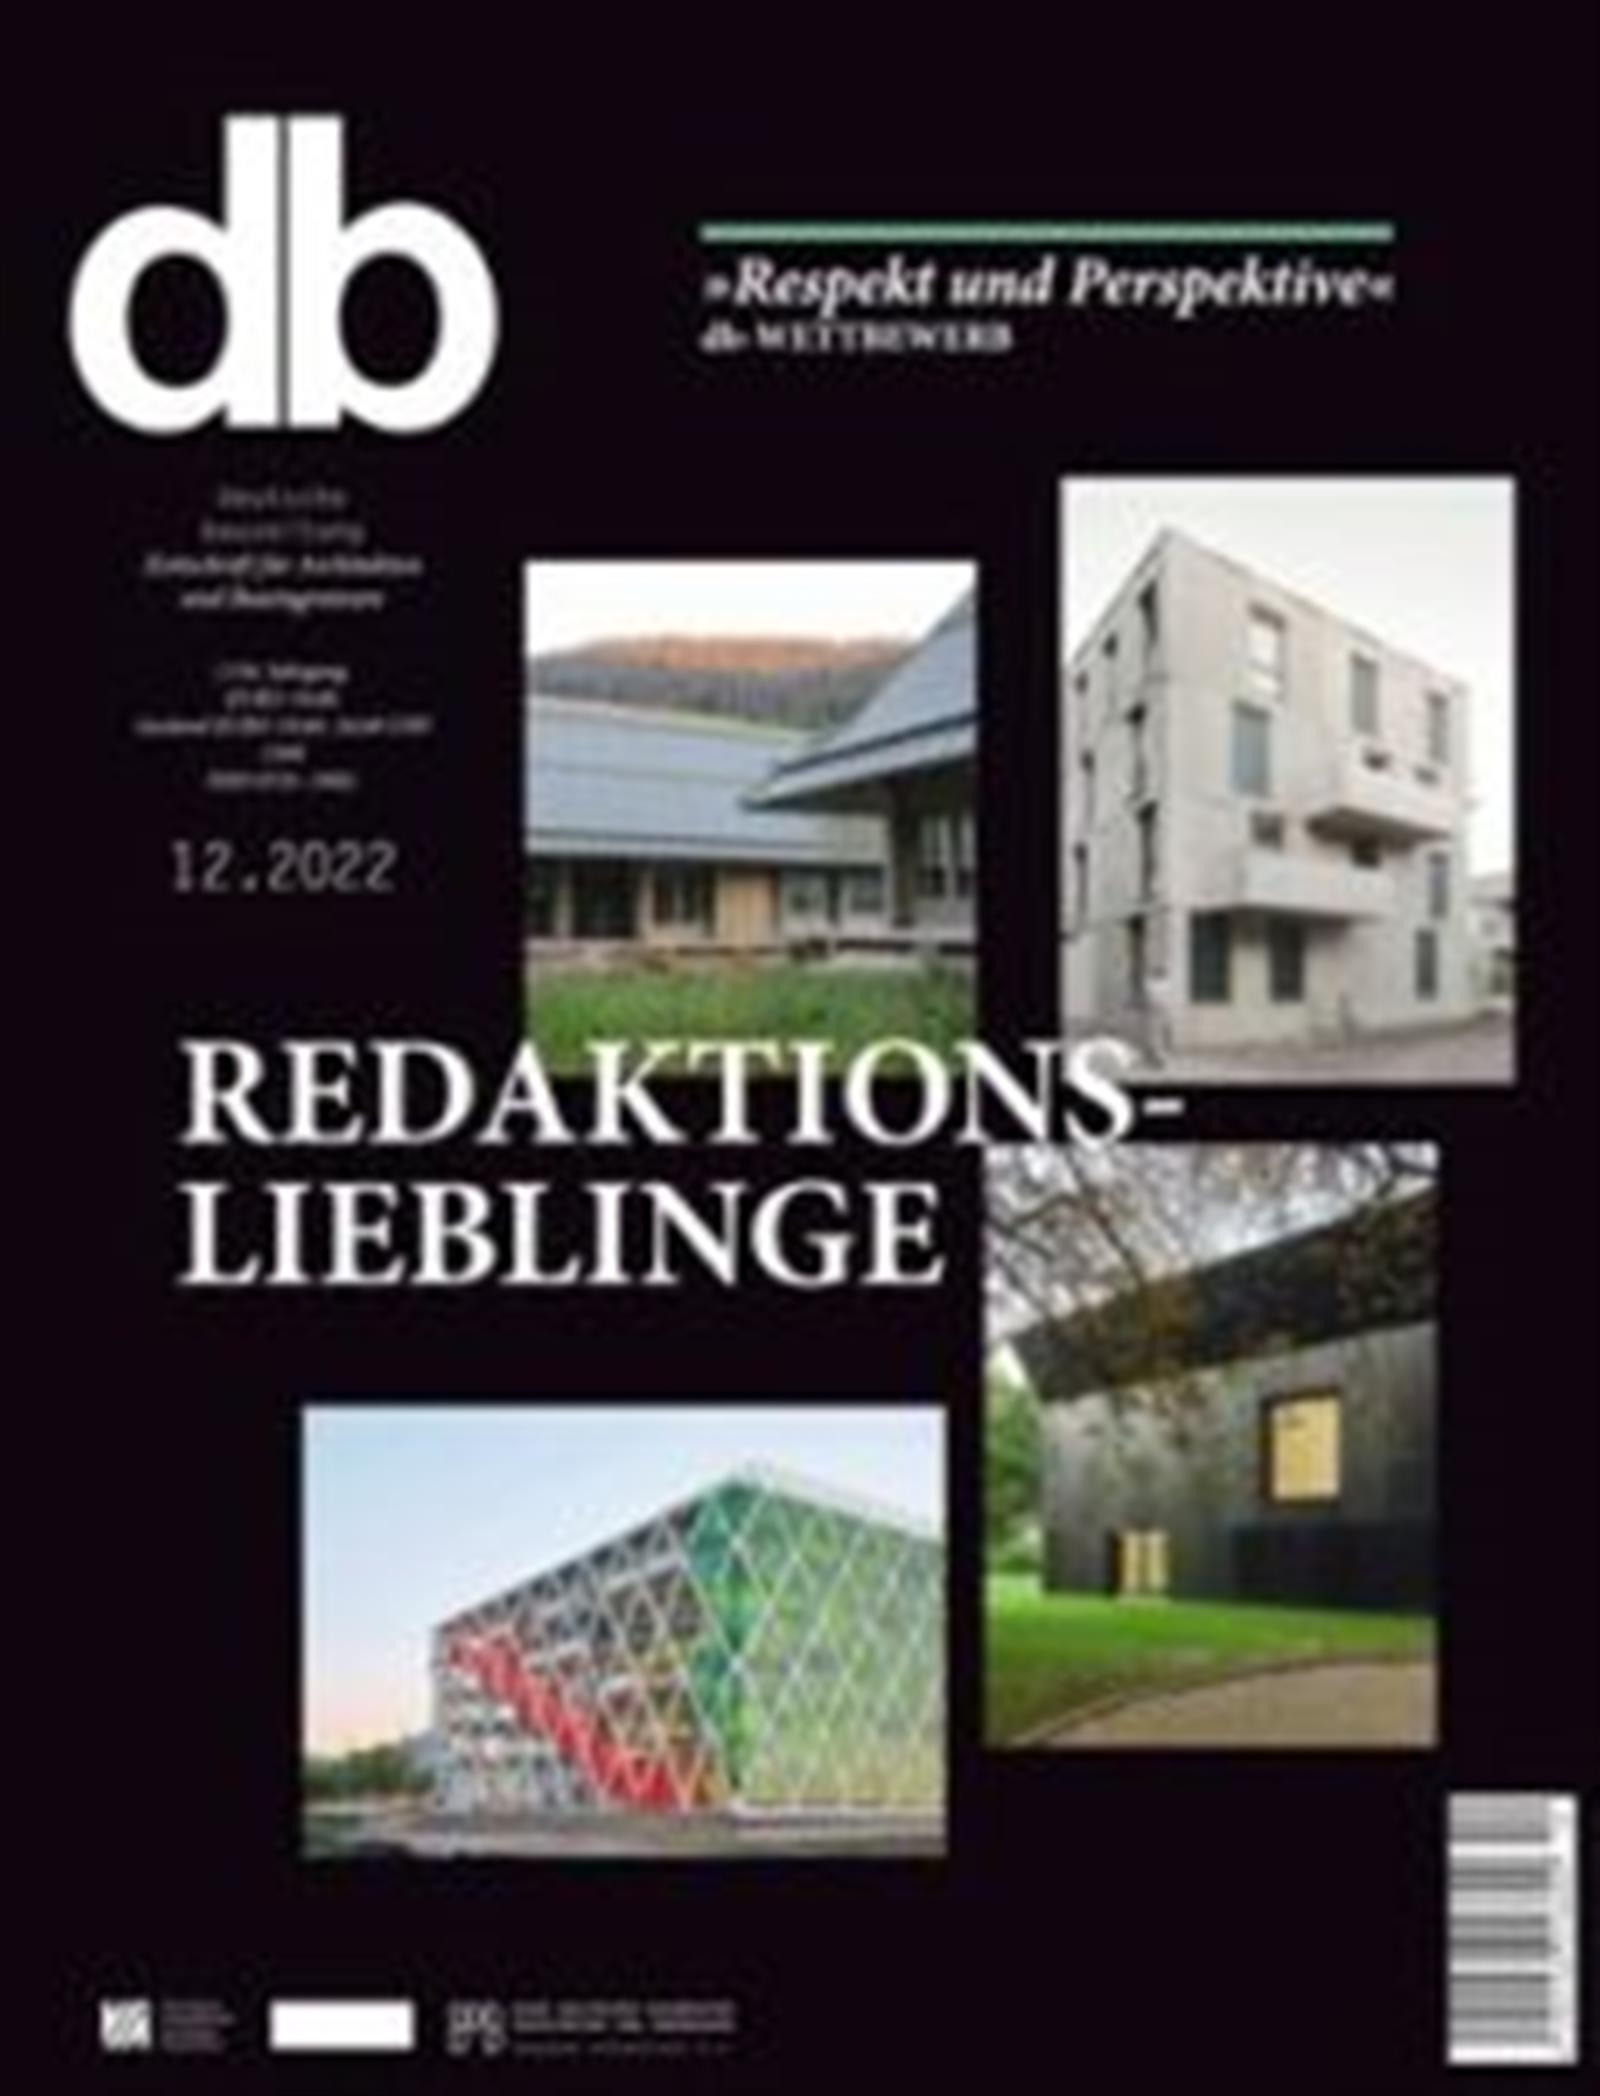 Deutsche BauZeitschrift – die Architekturfachzeitschrift